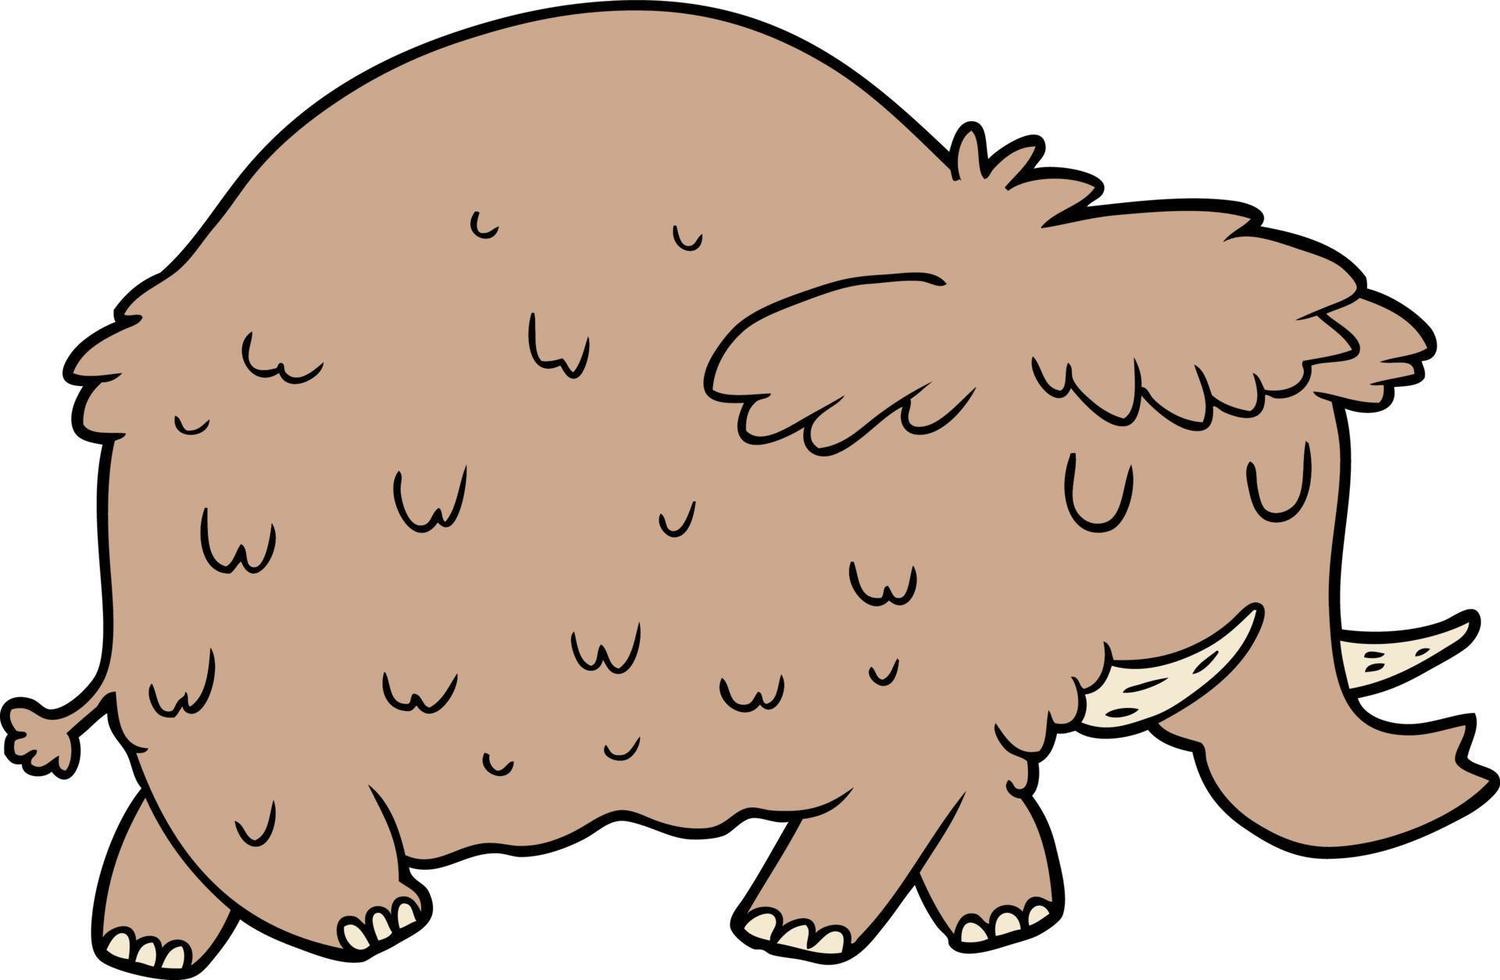 mamute pré-histórico dos desenhos animados vetor